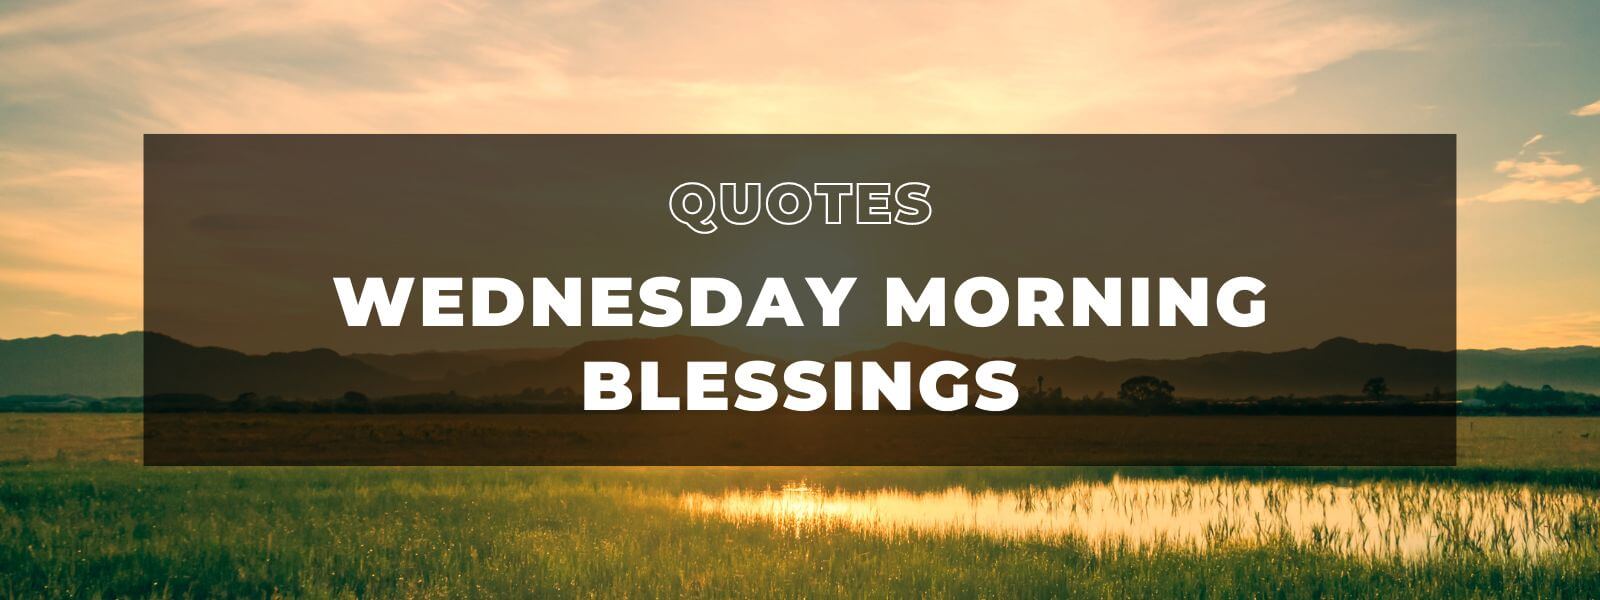 Wednesday Morning Blessings Banner